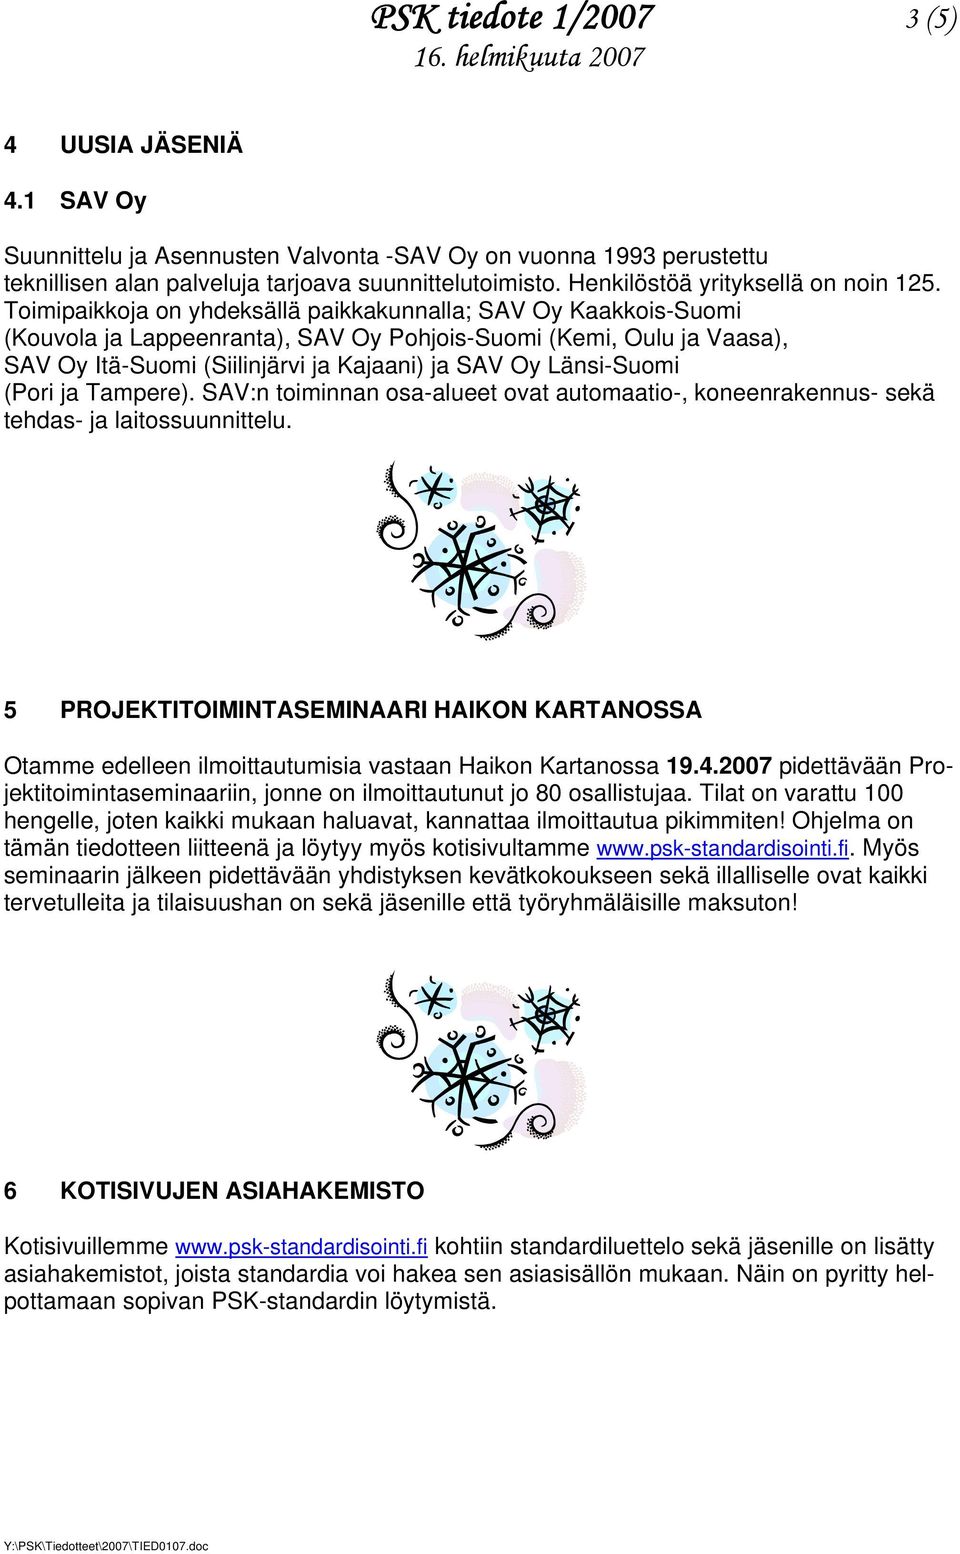 Toimipaikkoja on yhdeksällä paikkakunnalla; SAV Oy Kaakkois-Suomi (Kouvola ja Lappeenranta), SAV Oy Pohjois-Suomi (Kemi, Oulu ja Vaasa), SAV Oy Itä-Suomi (Siilinjärvi ja Kajaani) ja SAV Oy